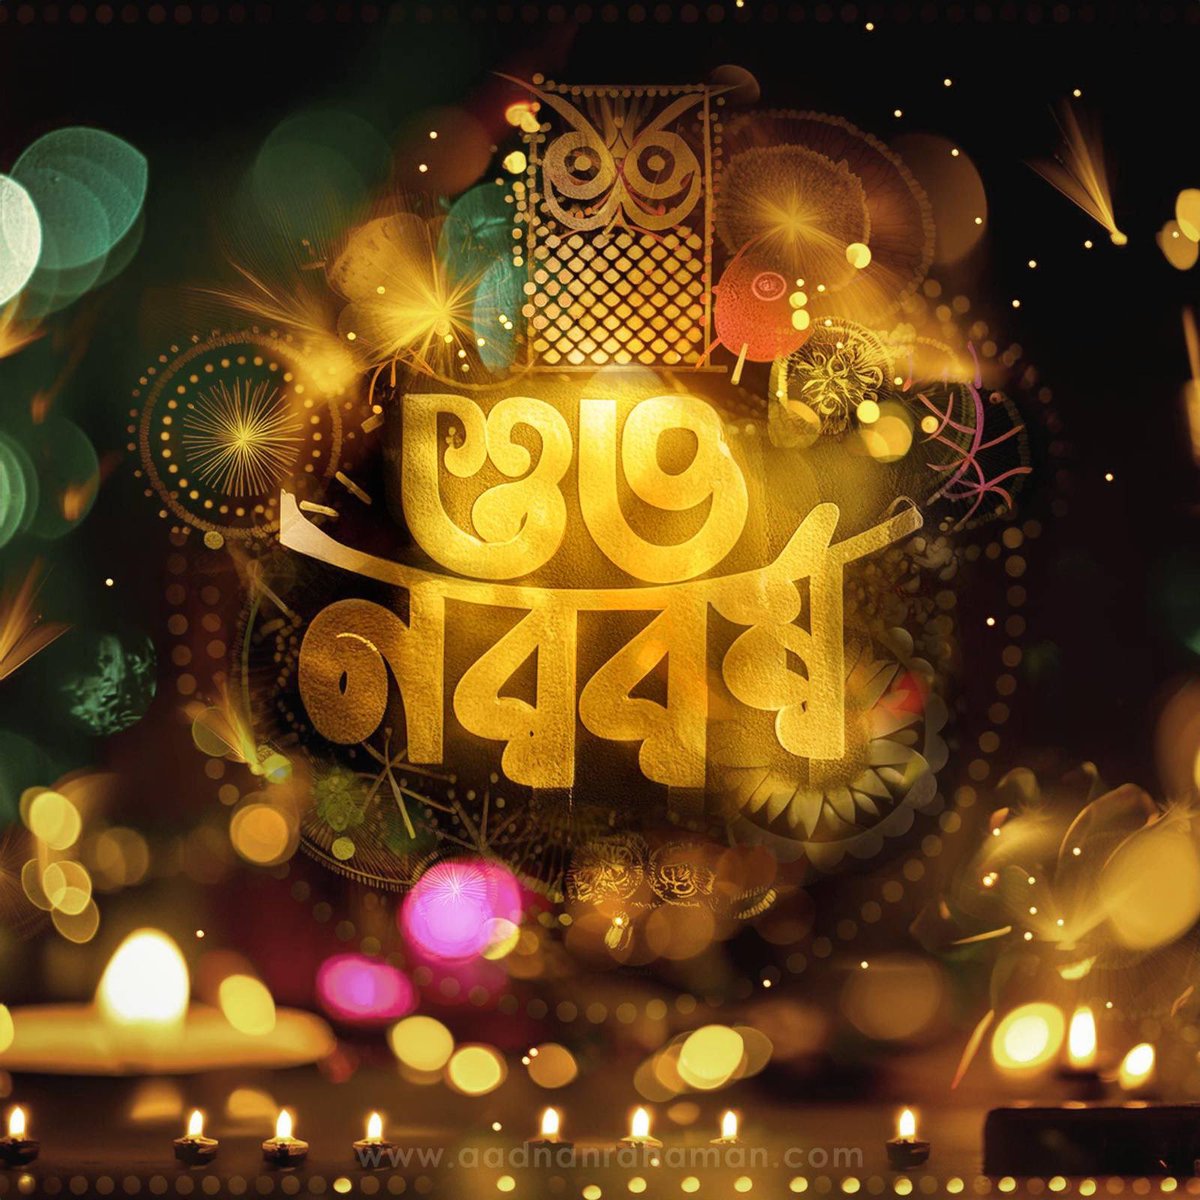 নতুন ভোর, নতুন আলো 
নতুন বছর কাটুক ভালো।
নতুন দিন, নতুন আশা
সুখ, শান্তি, ভালোবাসা।

এসেছে আজ নতুন বর্ষ
জানাই সবাইকে, শুভ নববর্ষ।

#শুভনববর্ষ
#শুভনববর্ষ১৪৩১
#বাংলানববর্ষ
#পহেলাবৈশাখ
#ShubhoNoboborsho
#HappyBengaliNewYear
#BengaliNewYear1431